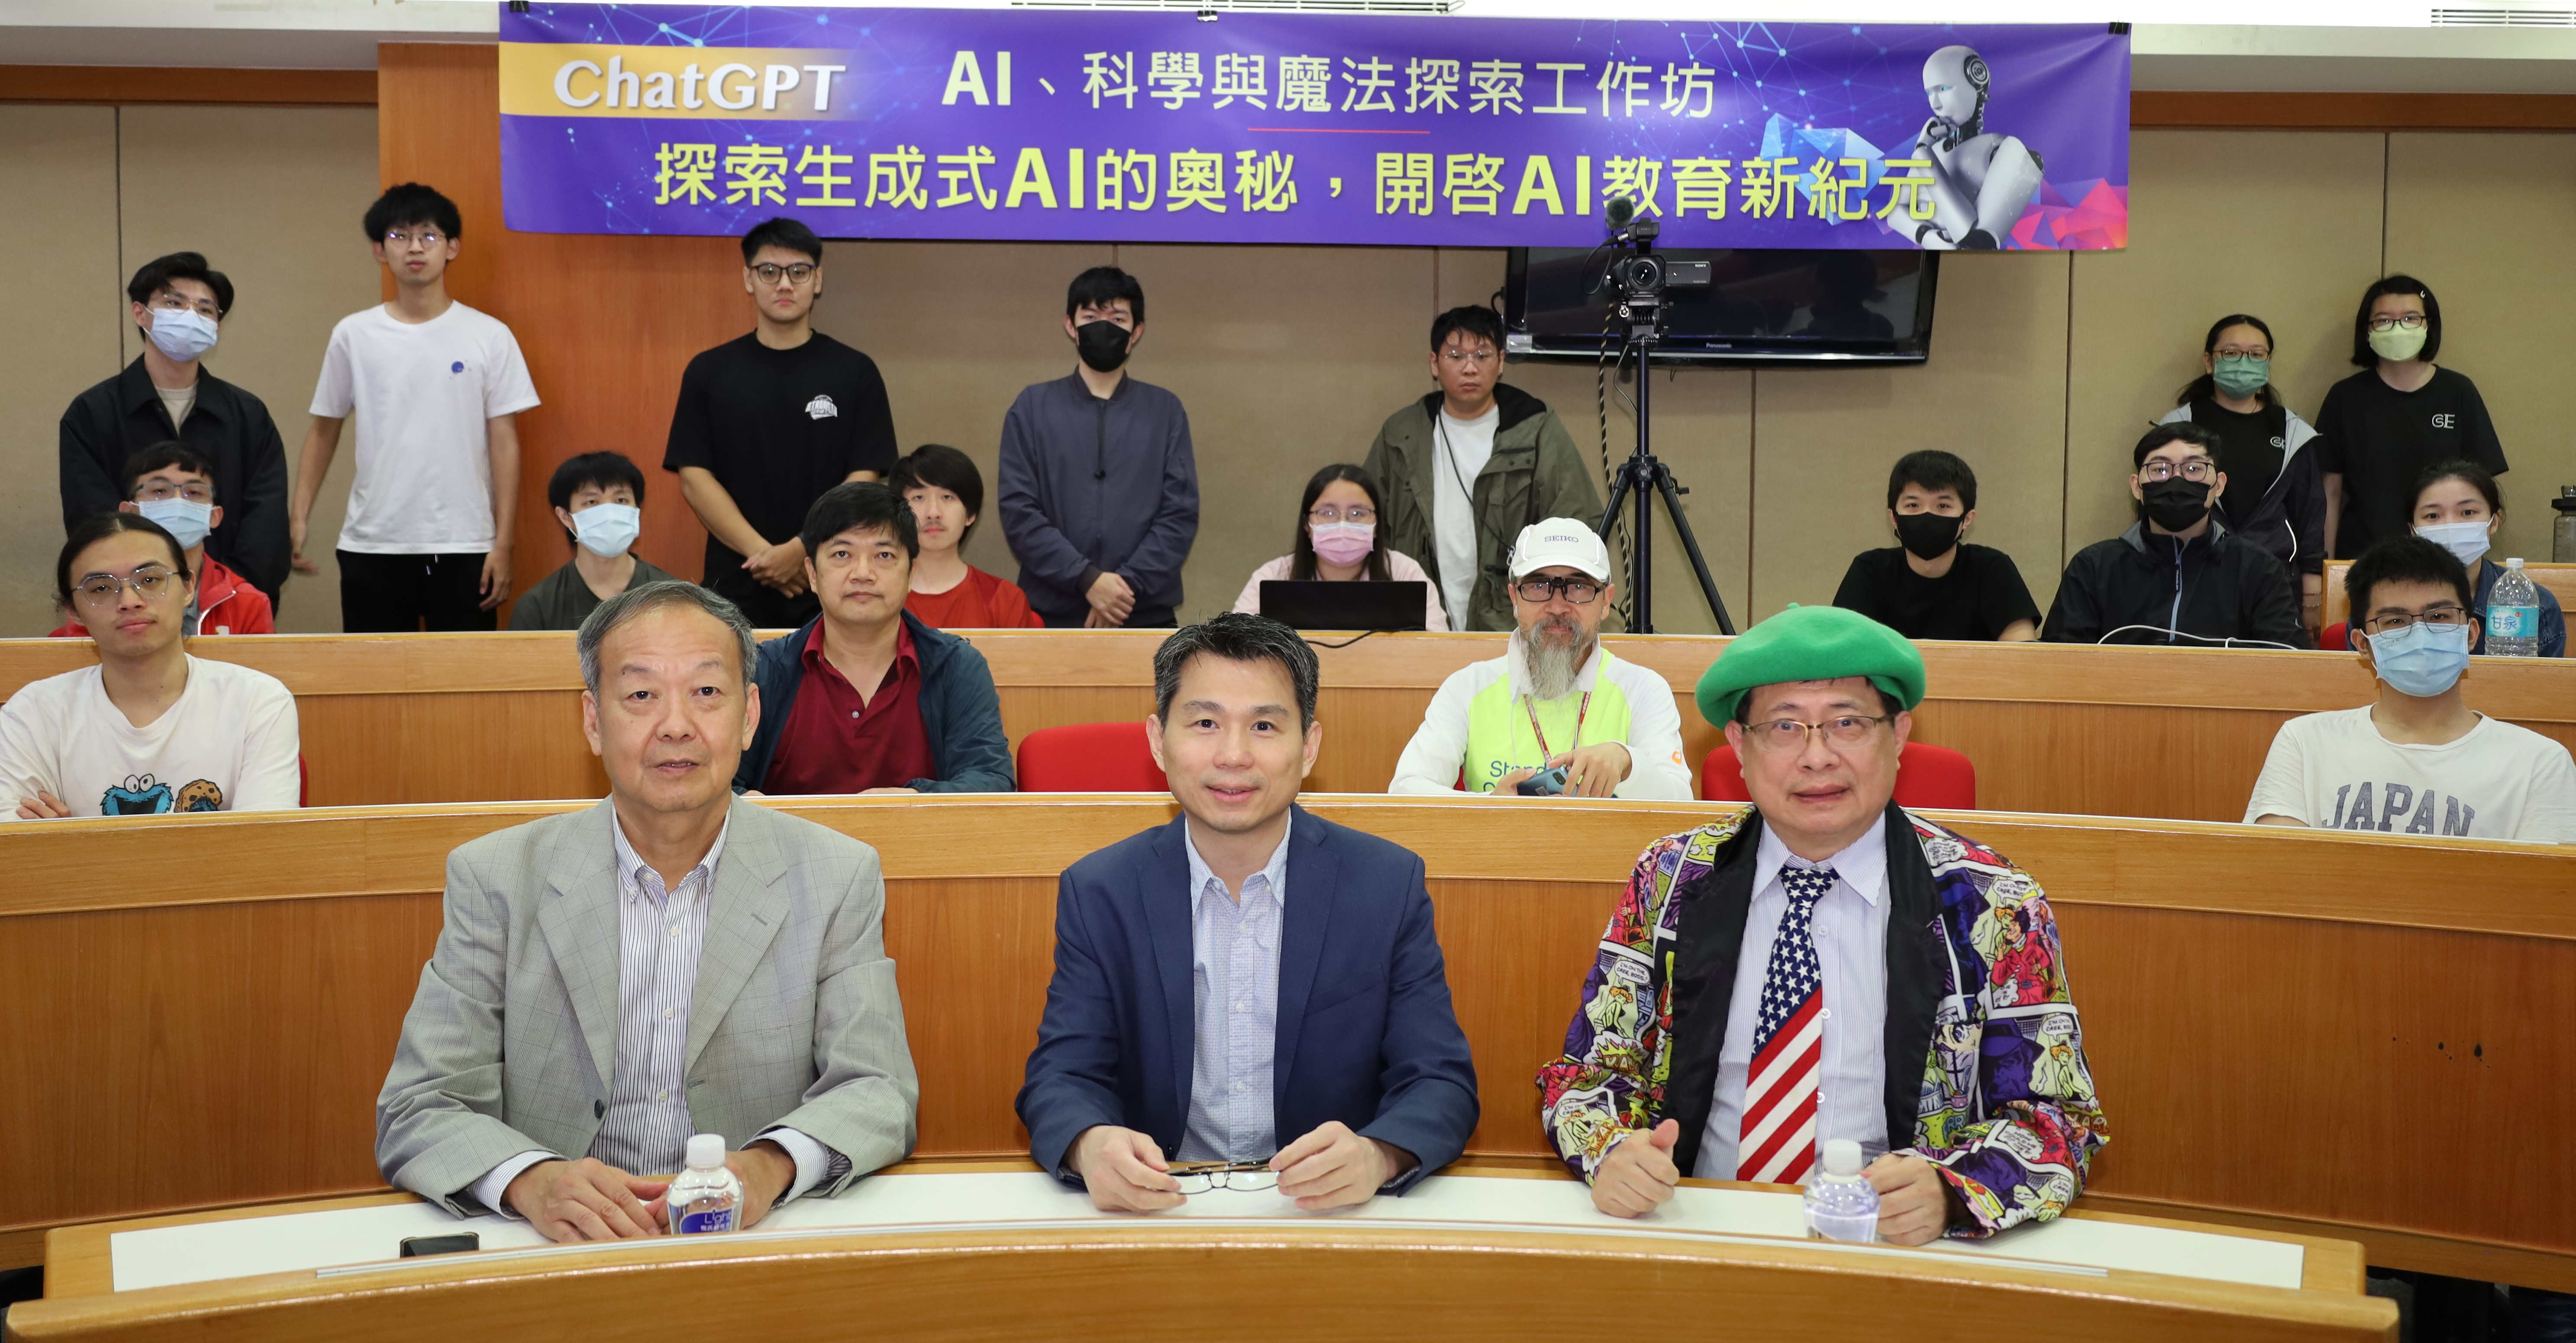 亞大舉辦「ChatGPT：AI、科學與魔法探索」工作坊，(前排由左而右)副校長曾憲雄、講者中華民國人工智慧學會理事長丁川康、紐約NPI電腦公司總經理，和參與師生合影。